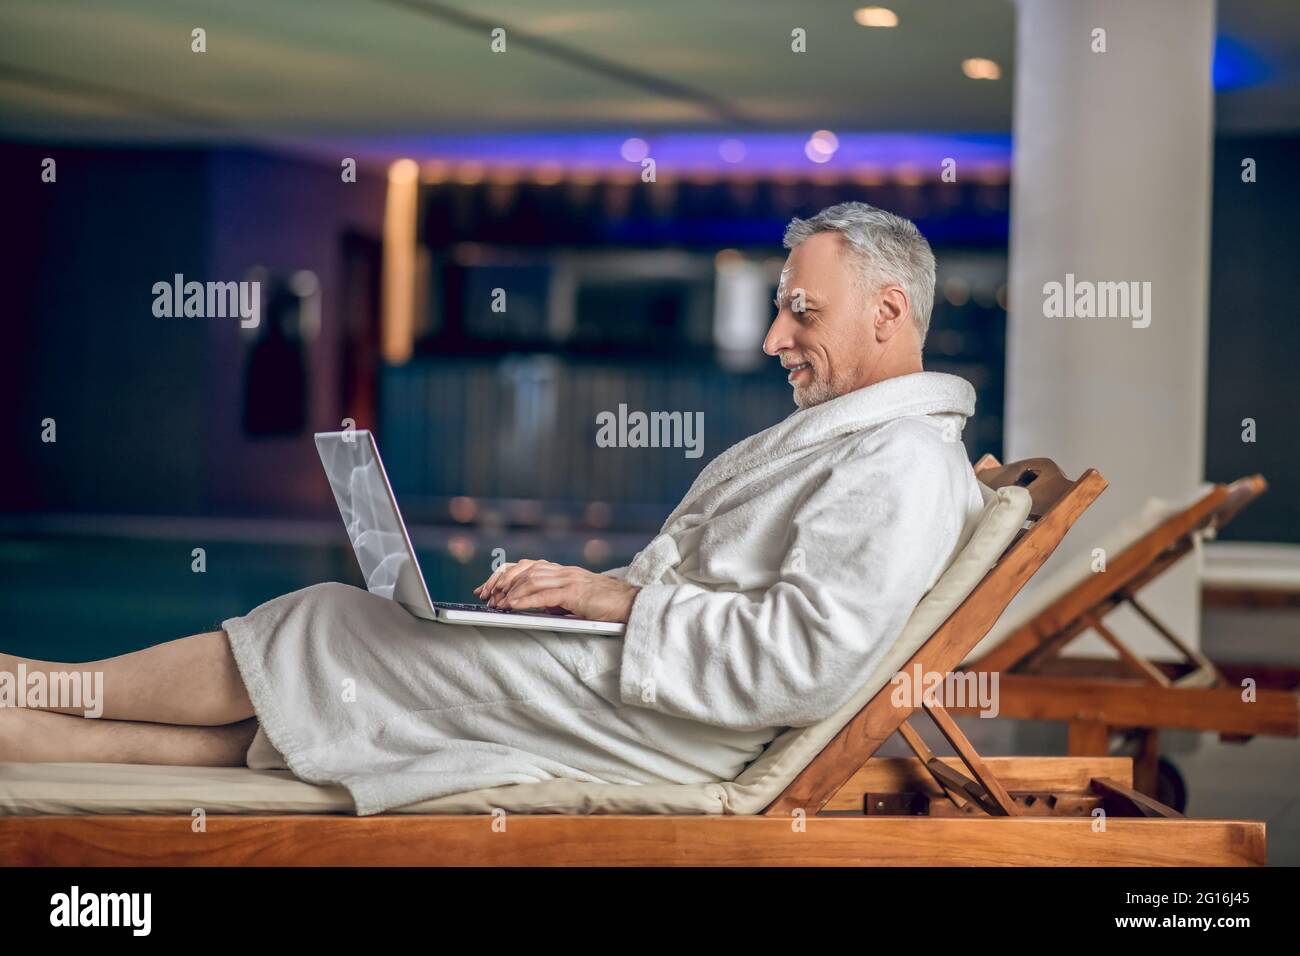 Un hombre barbudo de pelo gris en una bata de baño blanca que pasa tiempo en Internet Foto de stock